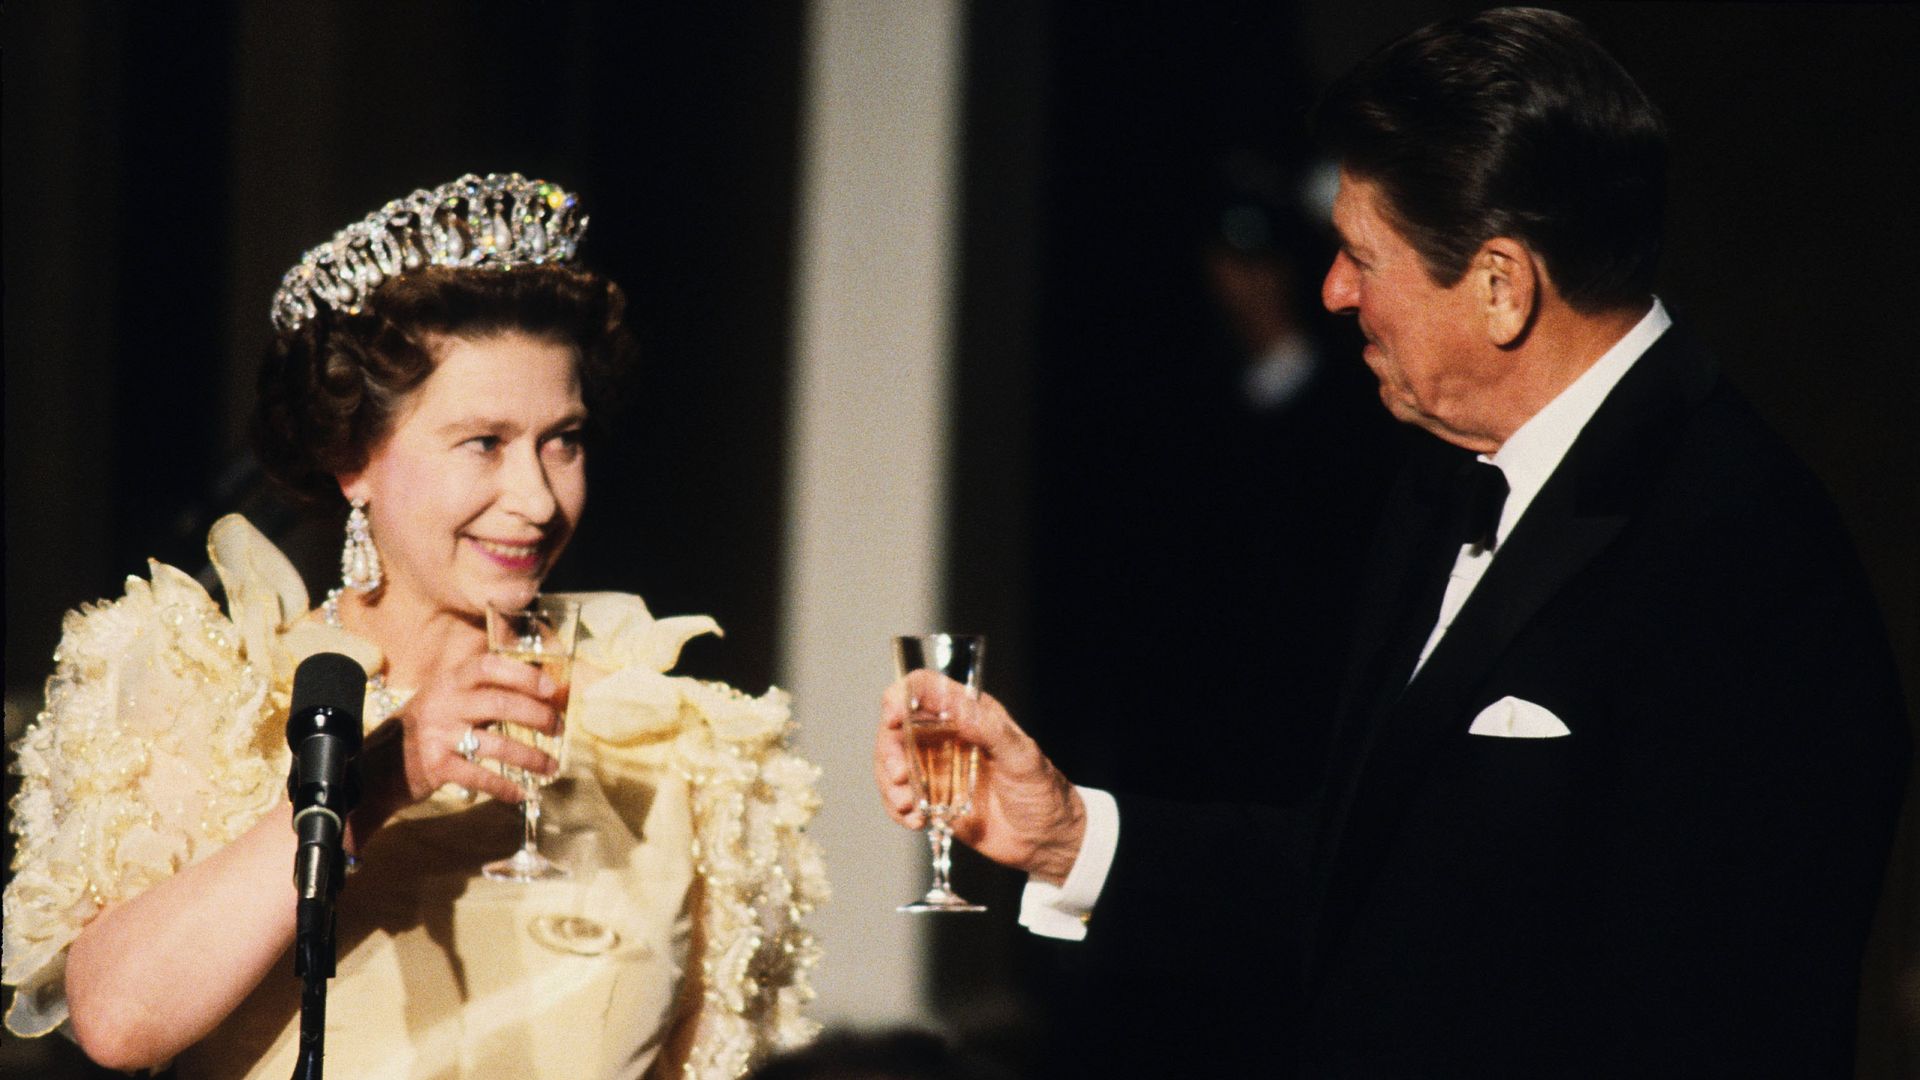 Queen Elizabeth II toasts President Ronald Reagan in 1983